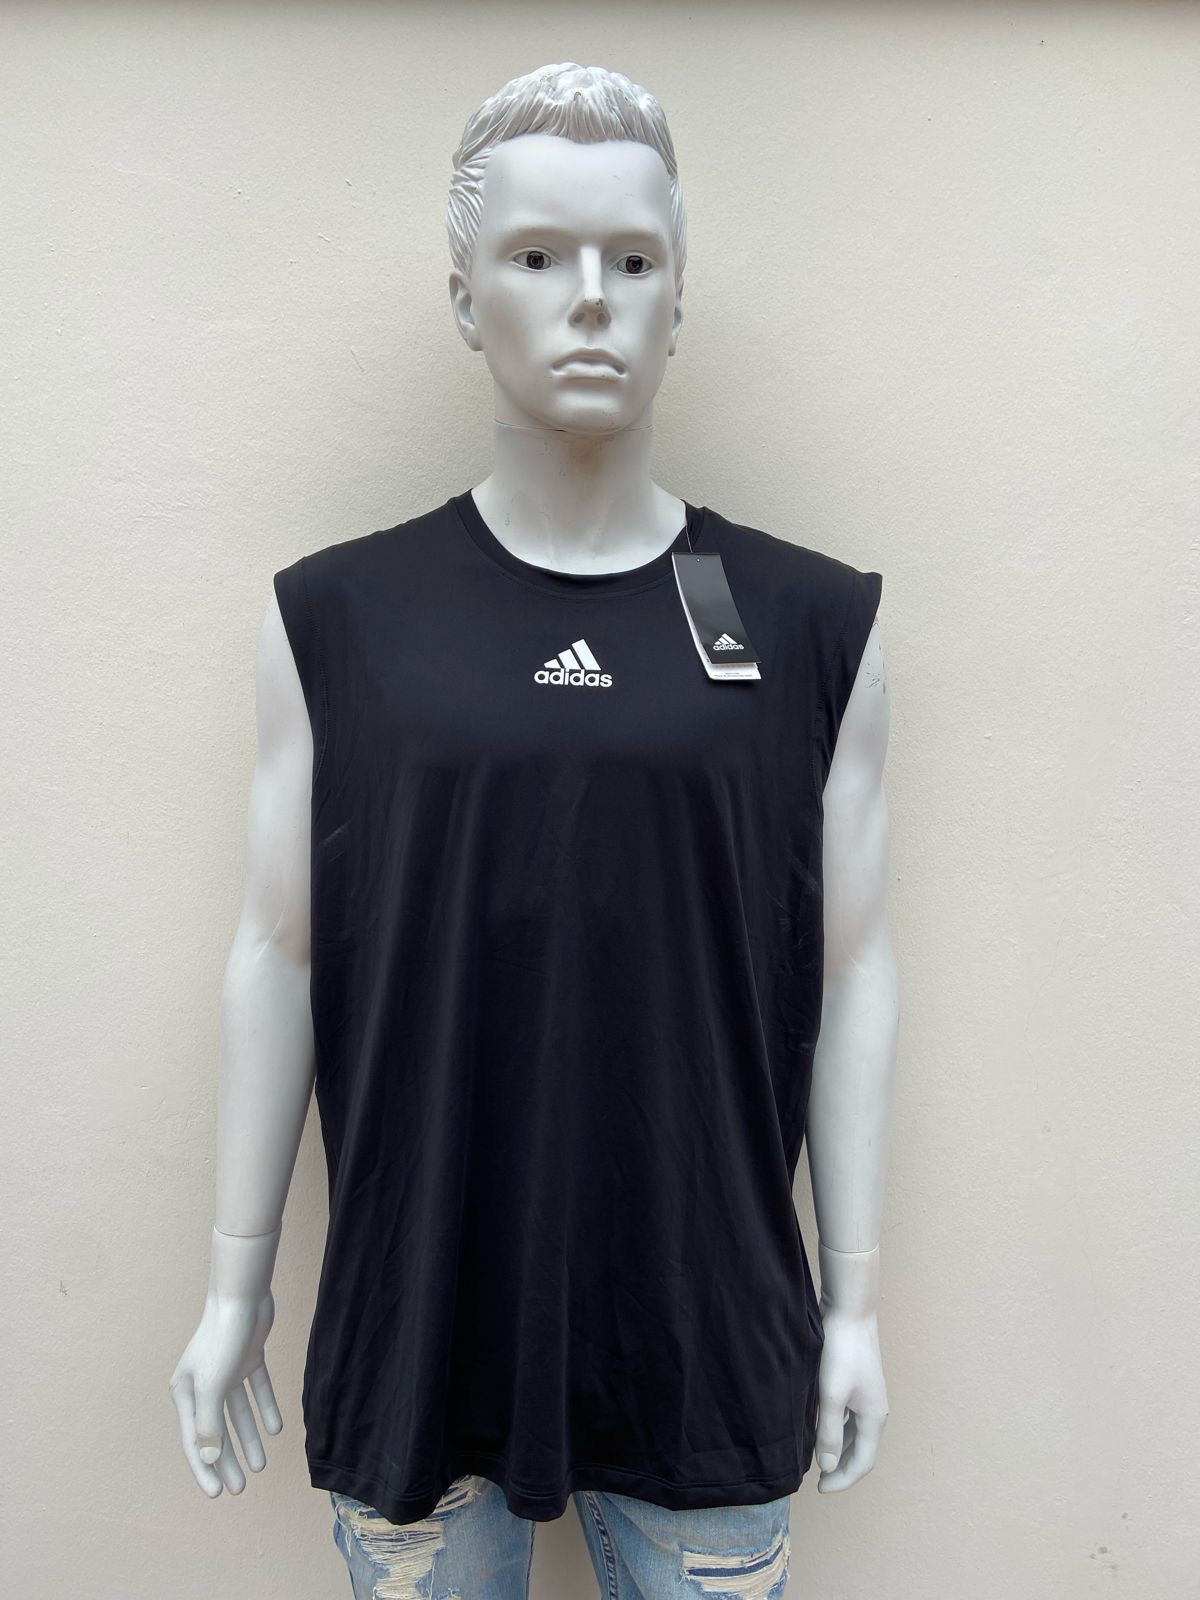 Franela Adidas original, negra con logotipo Adidas en color blanco.